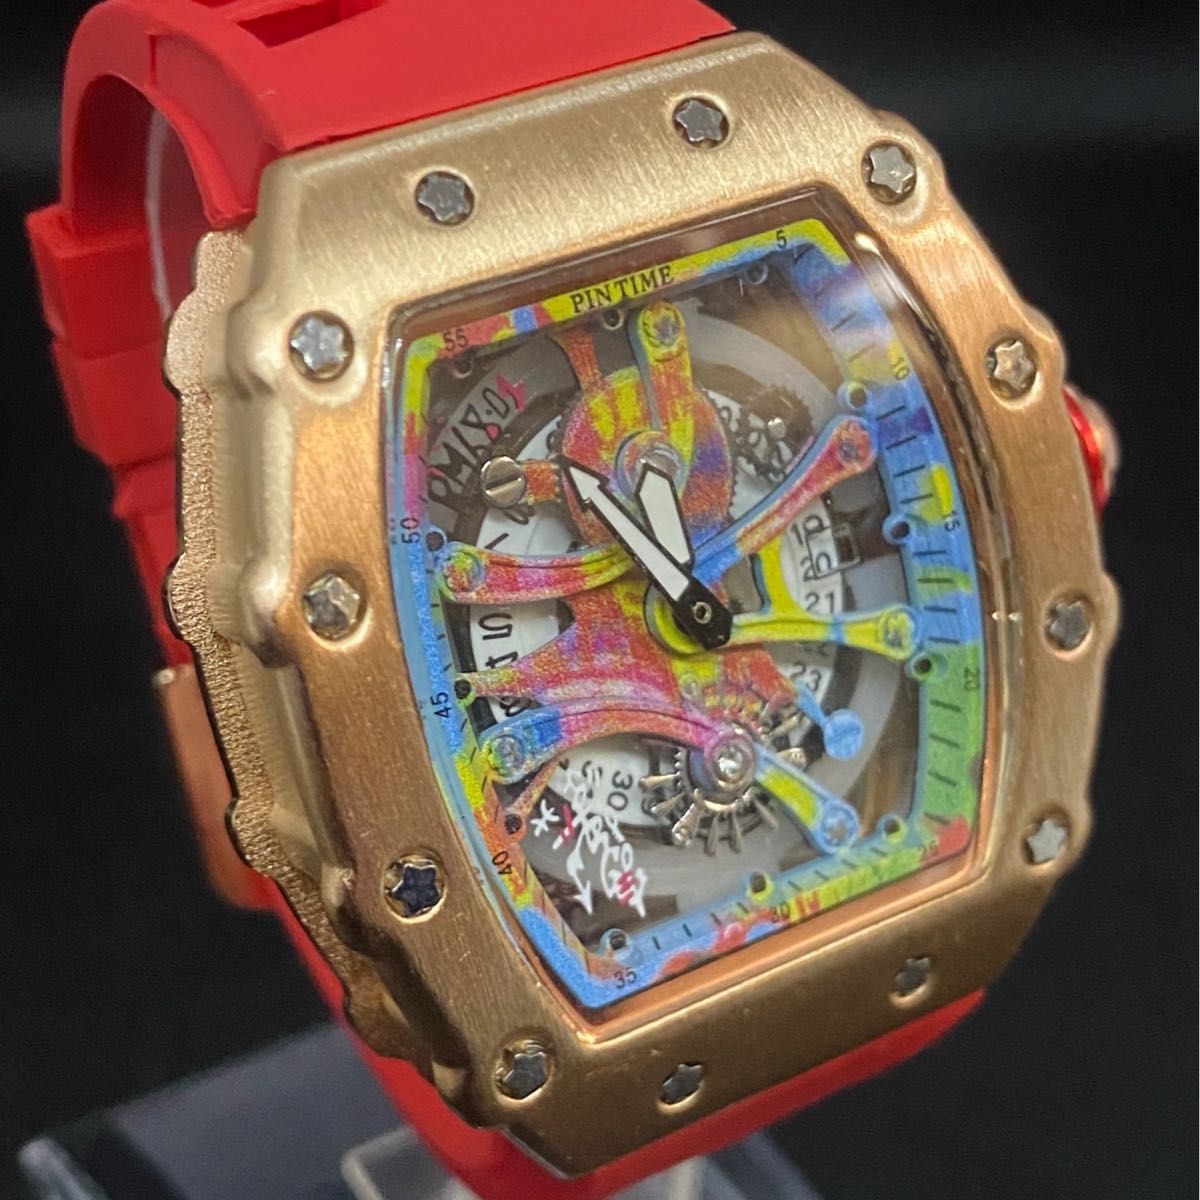 【日本未発売 アメリカ価格20,000円】PINTIME リシャールミル トゥールビヨンオマージュ メンズ腕時計 高級腕時計